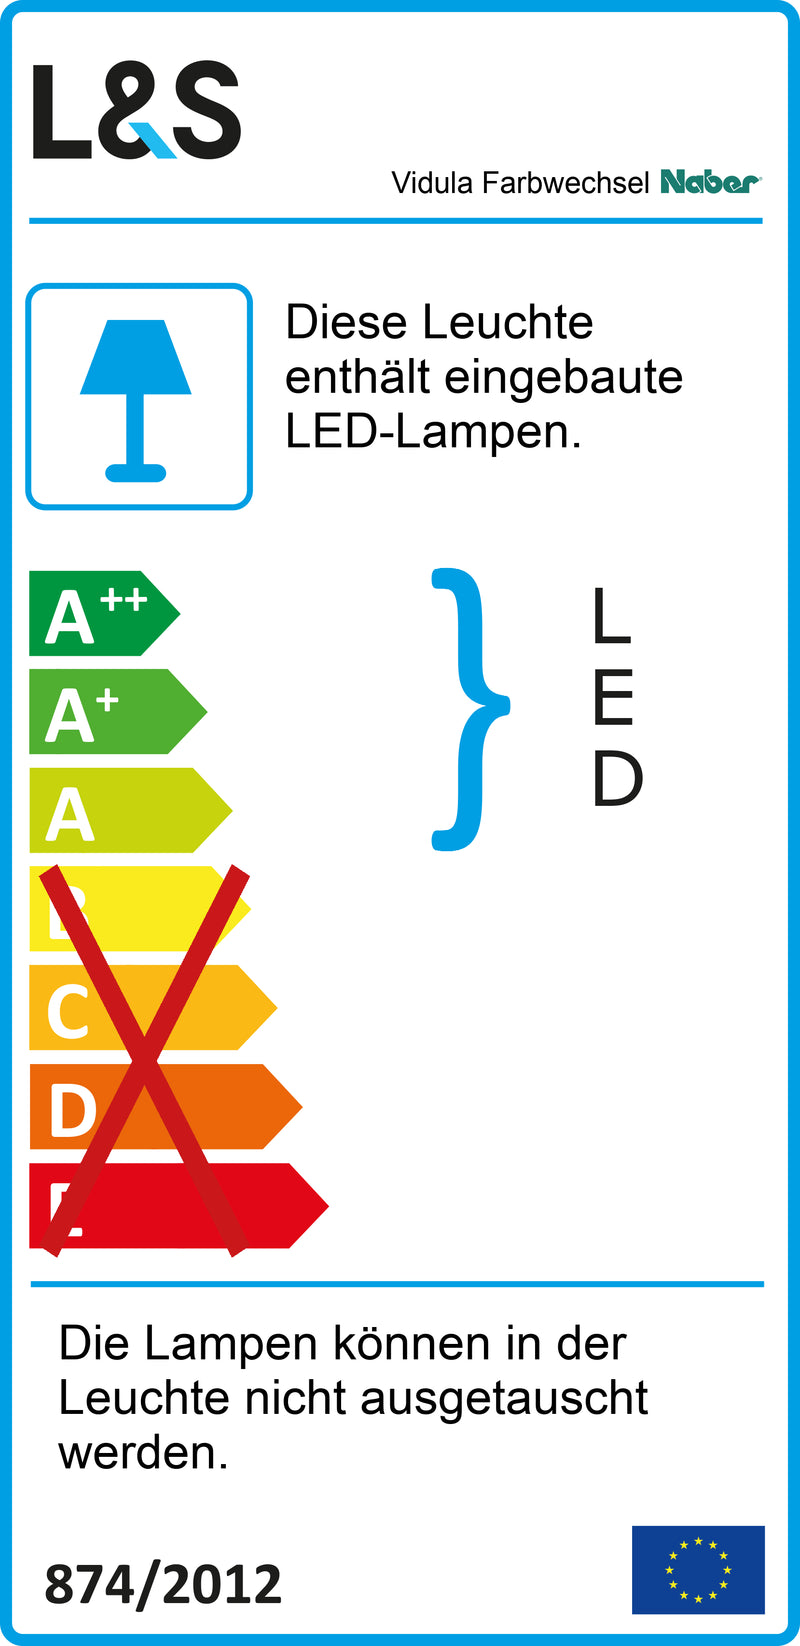 E-Label zu Zeichnung zu Vidula Farbwechsel LED als Variante L 2600 mm, edelstahlfarbig von Naber GmbH in der Kategorie Lichttechnik in Österreich auf conceptshop.at